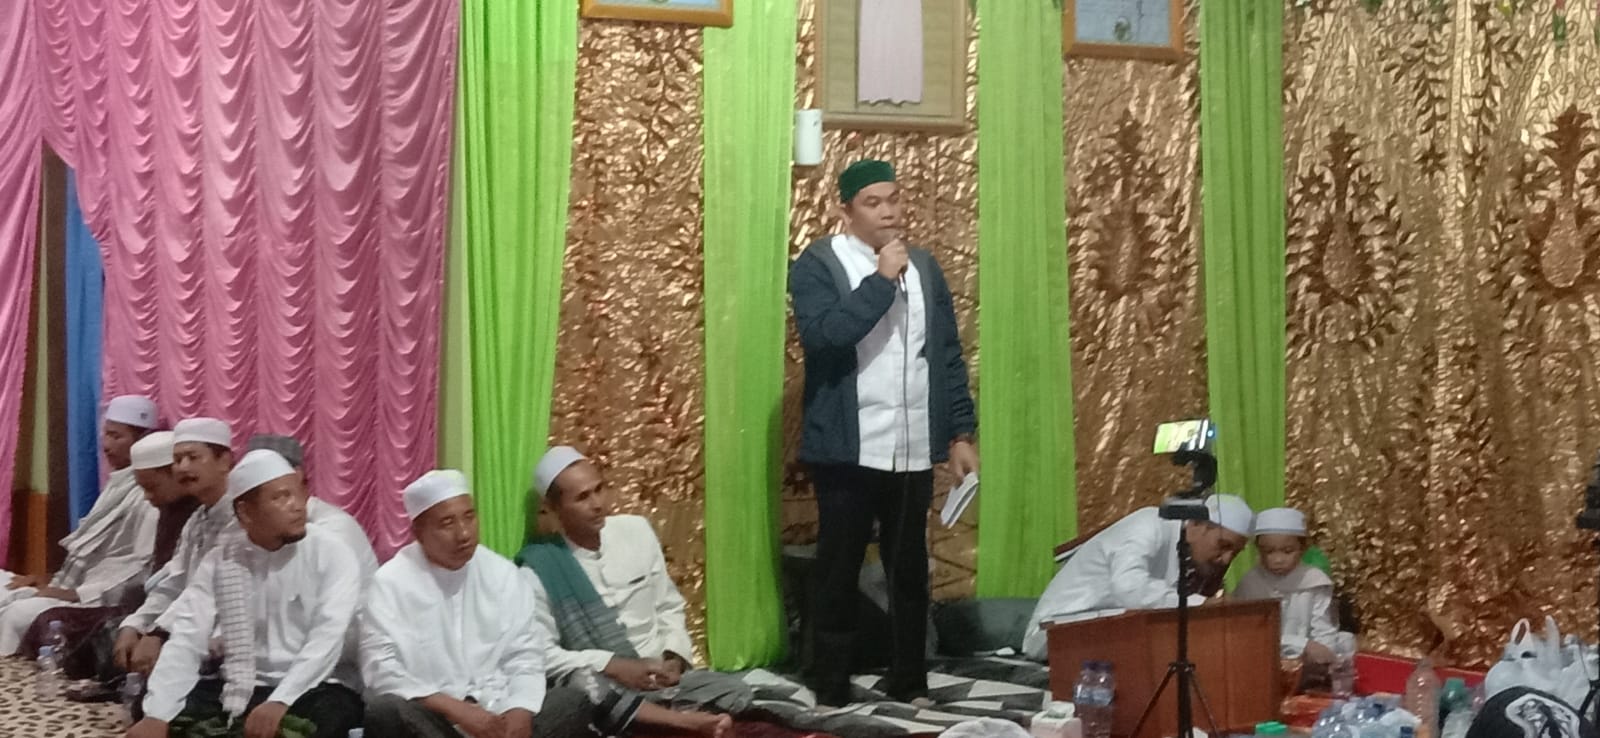 Peringatan Maulid Nabi Muhammad SAW 1443 Hijriyah di Desa Sangsang Dihadiri Wabub Kotabaru